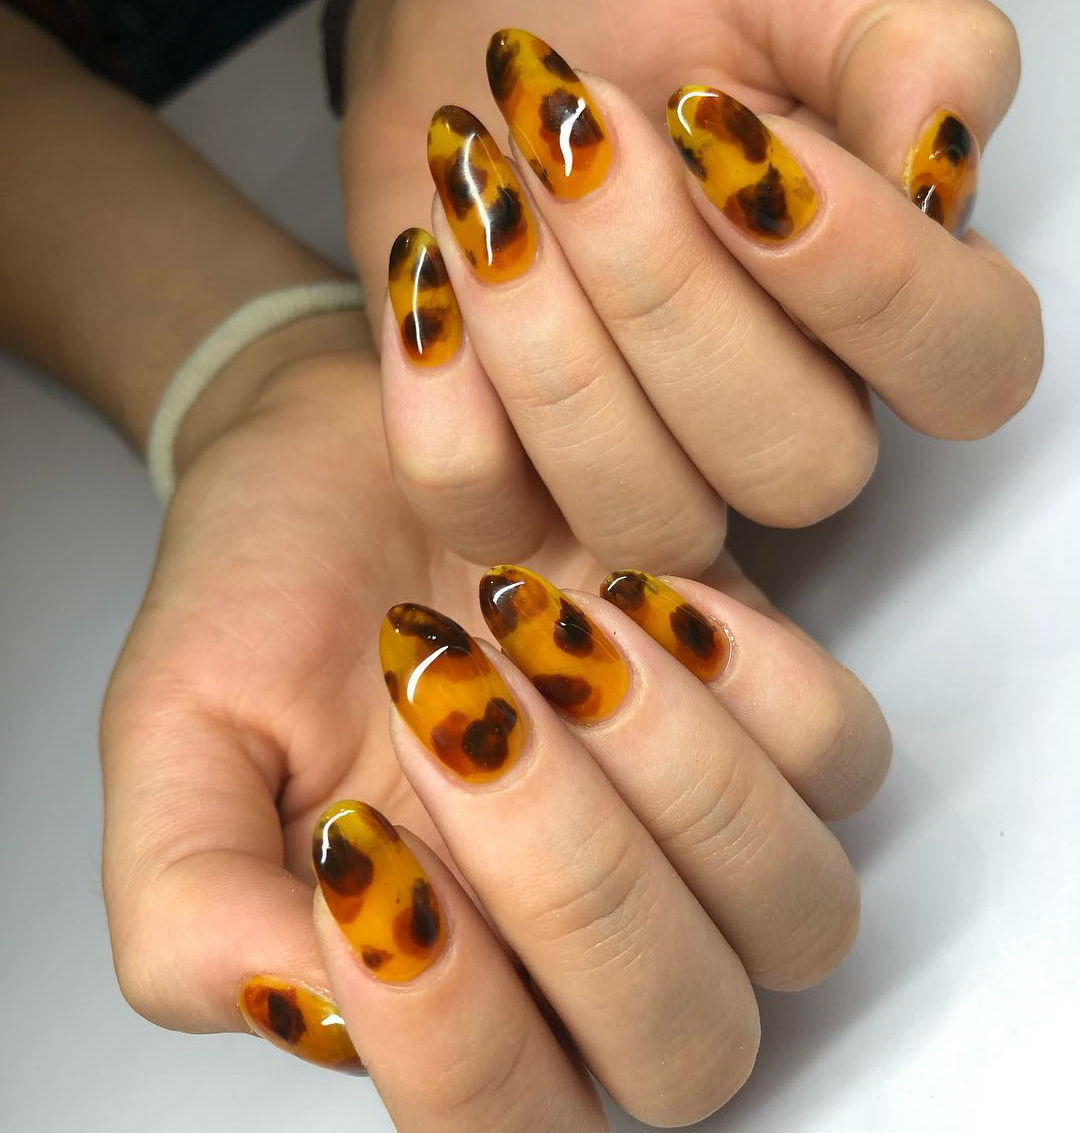 Tendencia en 2013 |  Las uñas de carey son la tendencia de manicura más fresca del otoño |  Su belleza